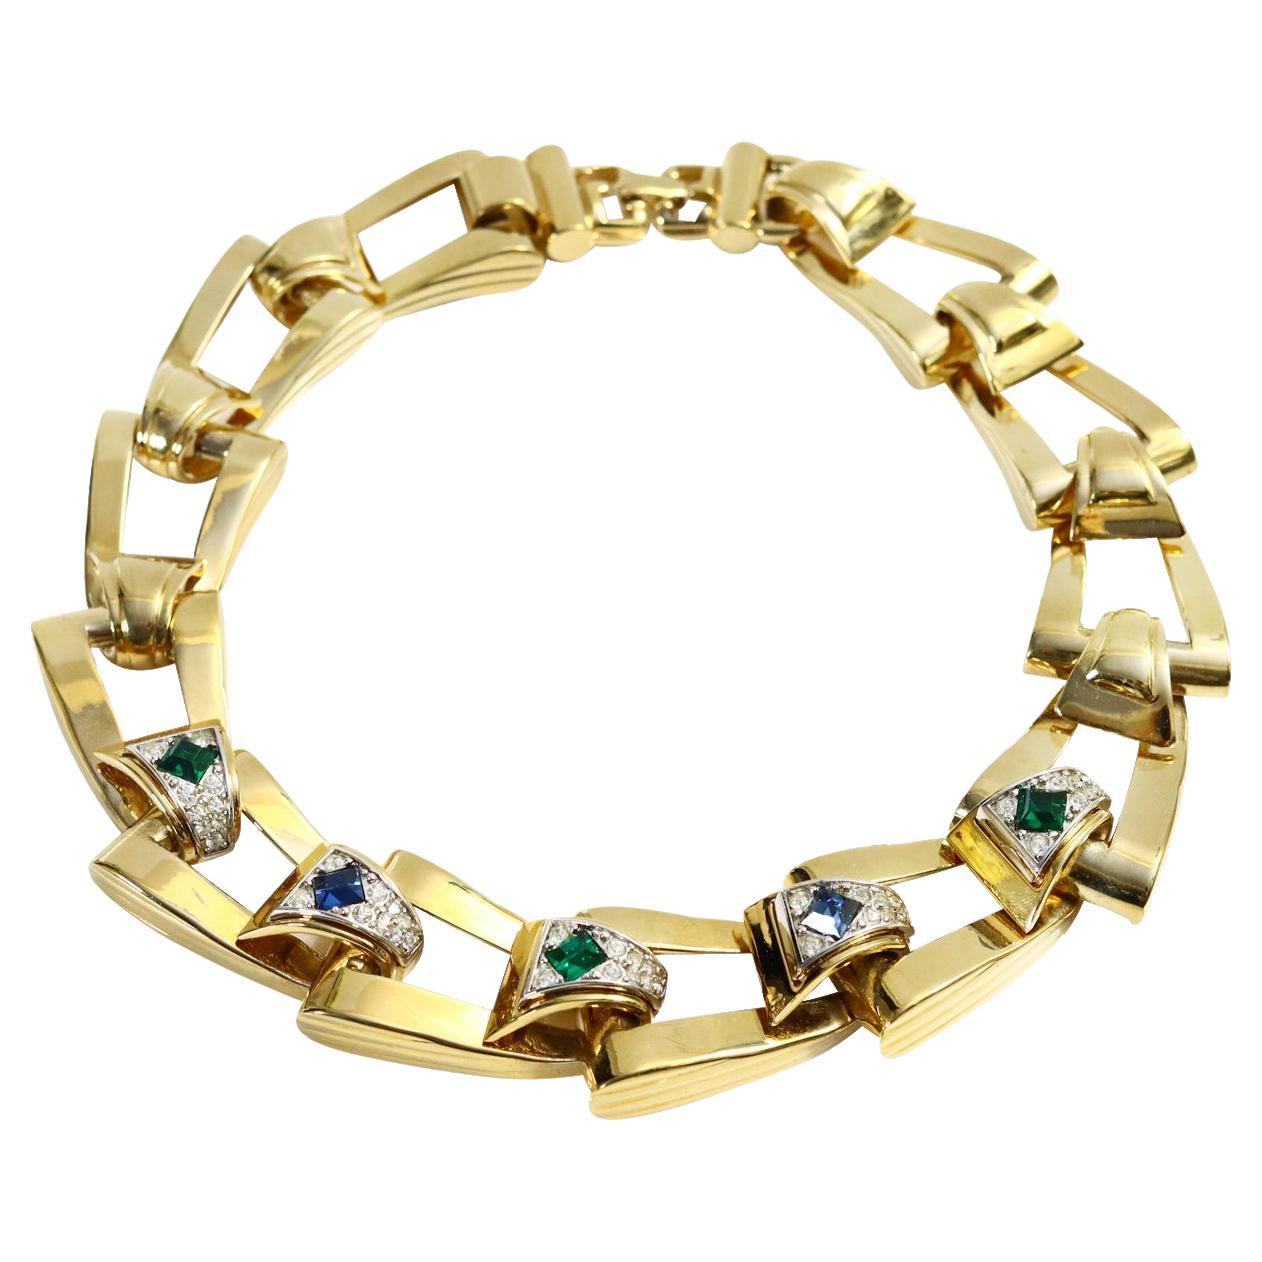 Vintage Givenchy Diamante and Gold Tone Link Necklace Circa 1980s. La plupart des liens sont constitués d'une pièce d'or avec des diamants, puis d'un cristal bleu, vert ou rouge au milieu. Un collier lourd et substantiel. Un bracelet assorti est